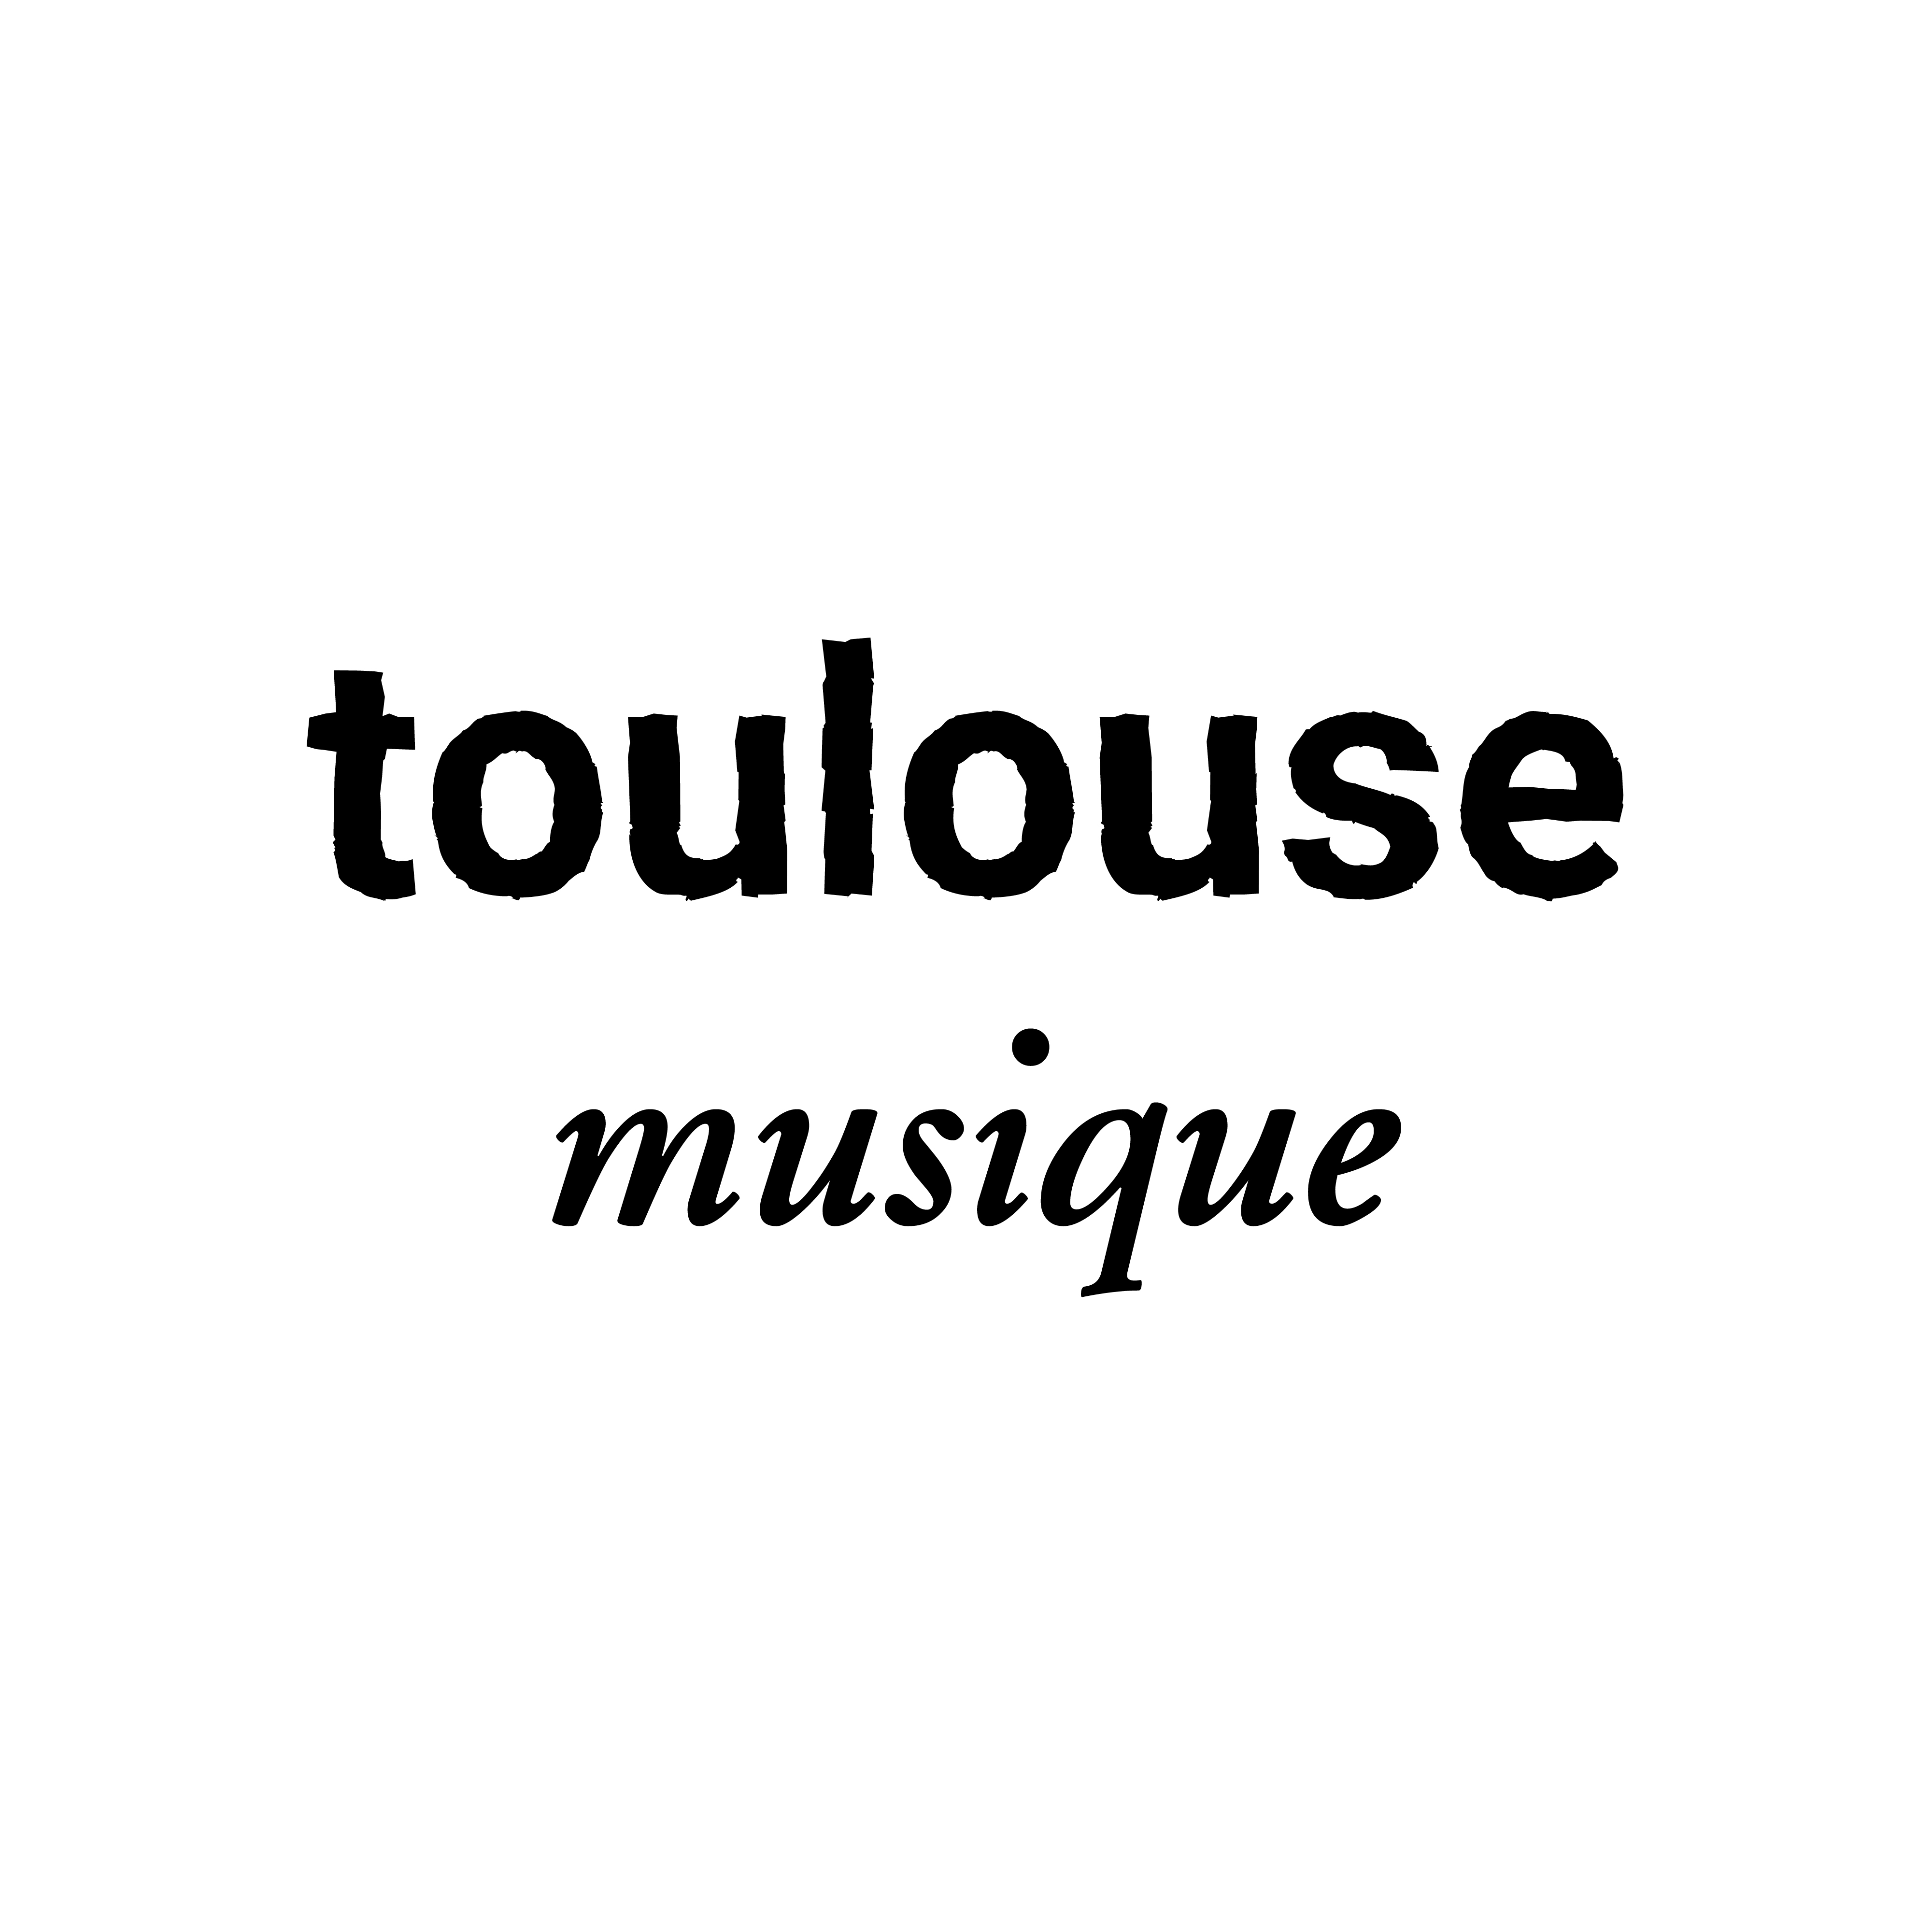 Toulouse Musique